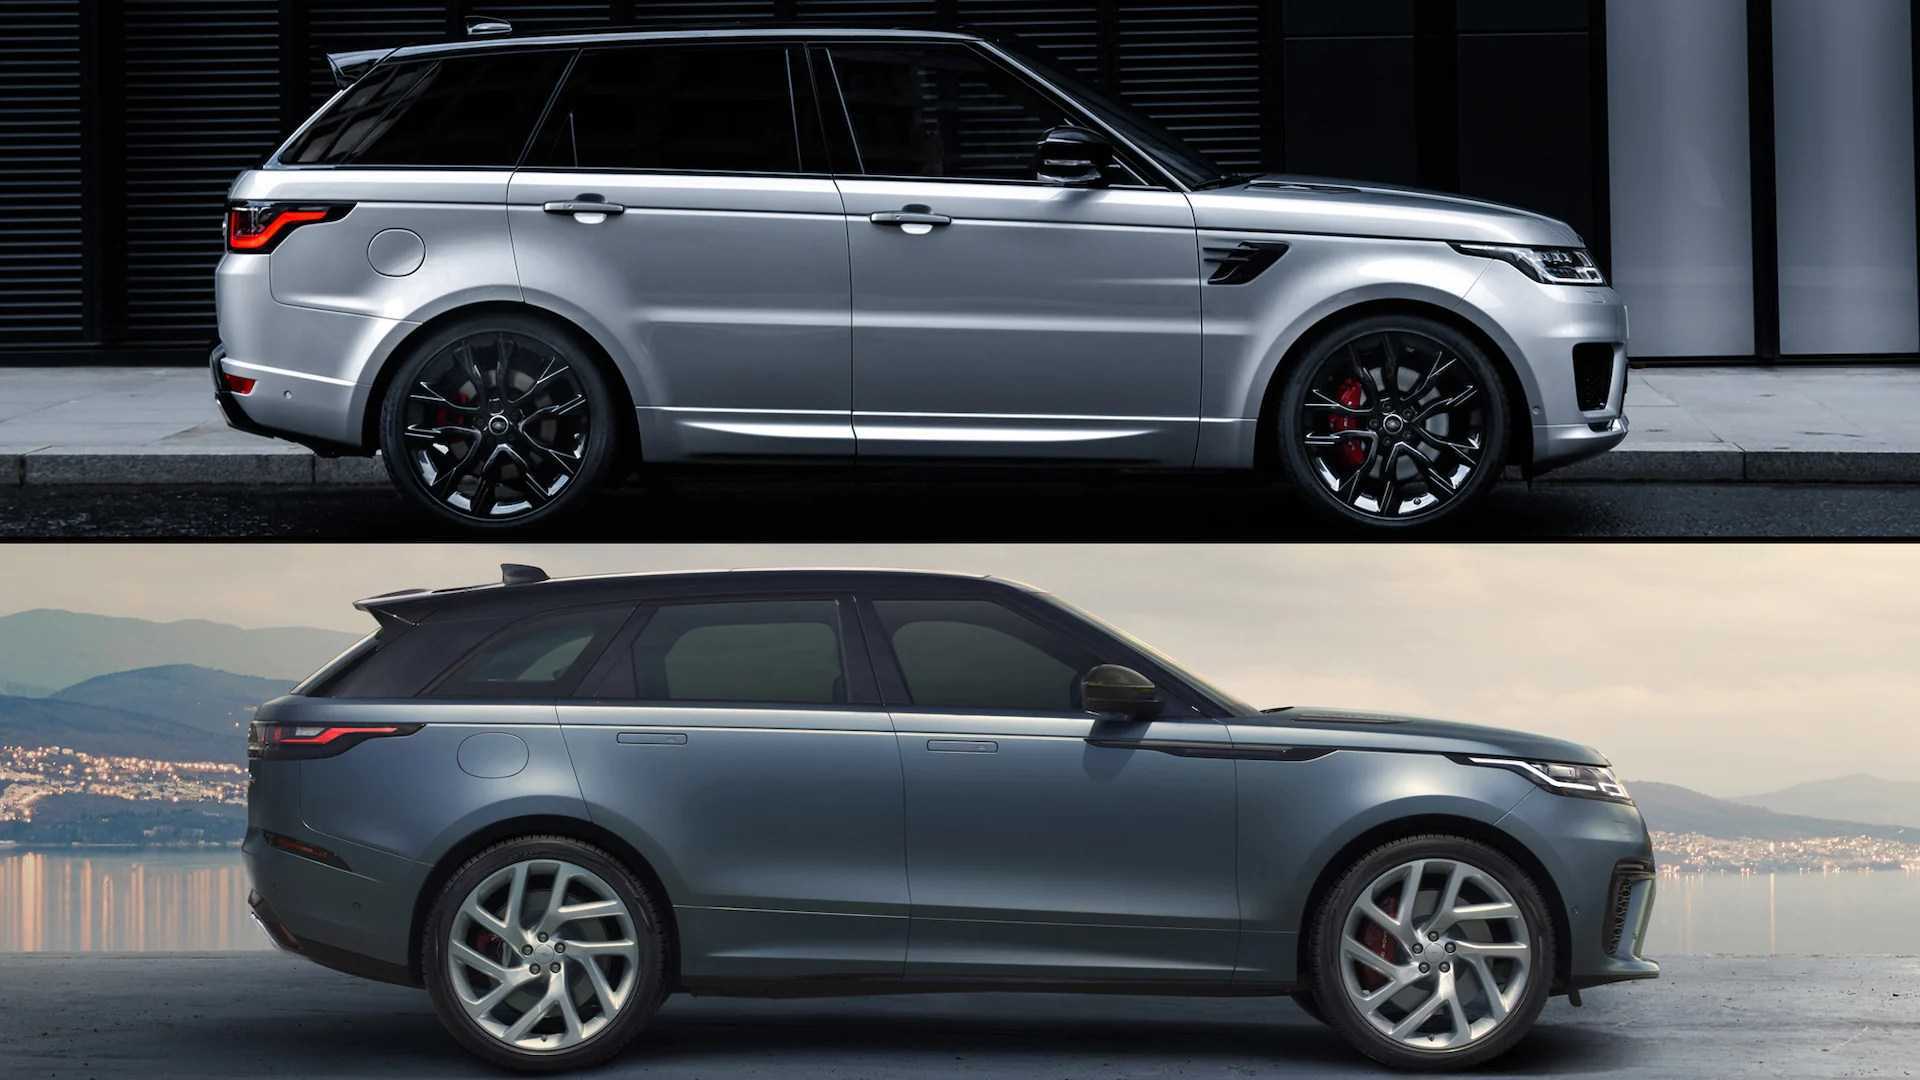 Range Rover Sport vs Velar